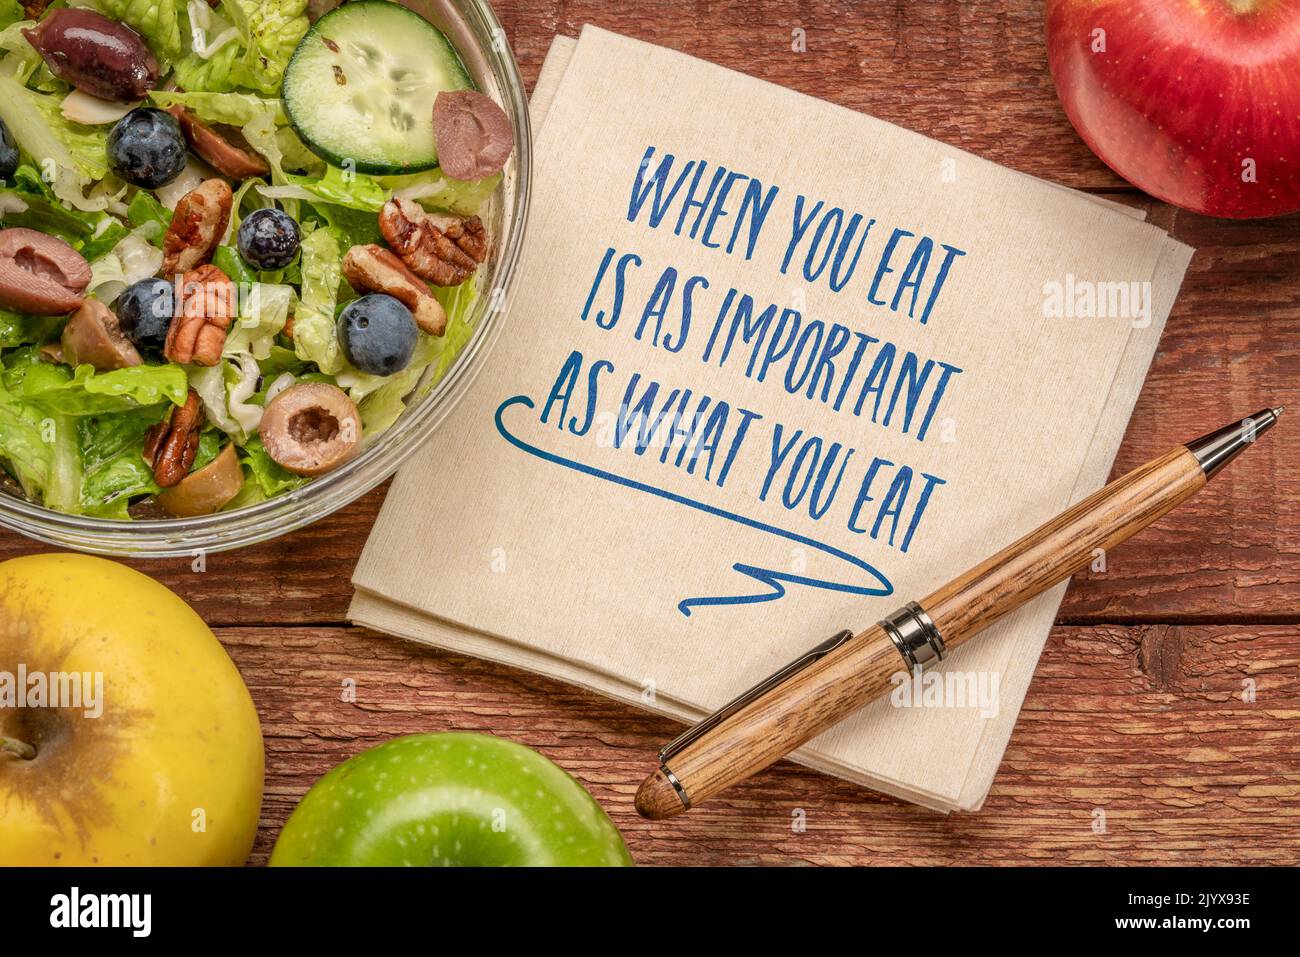 Wenn Sie essen, ist so wichtig wie das, was Sie essen - inspirierende Notiz auf einer Serviette mit einem gesunden Salat und Äpfeln, gesunde Ernährung und Lifestyle-Konzept Stockfoto